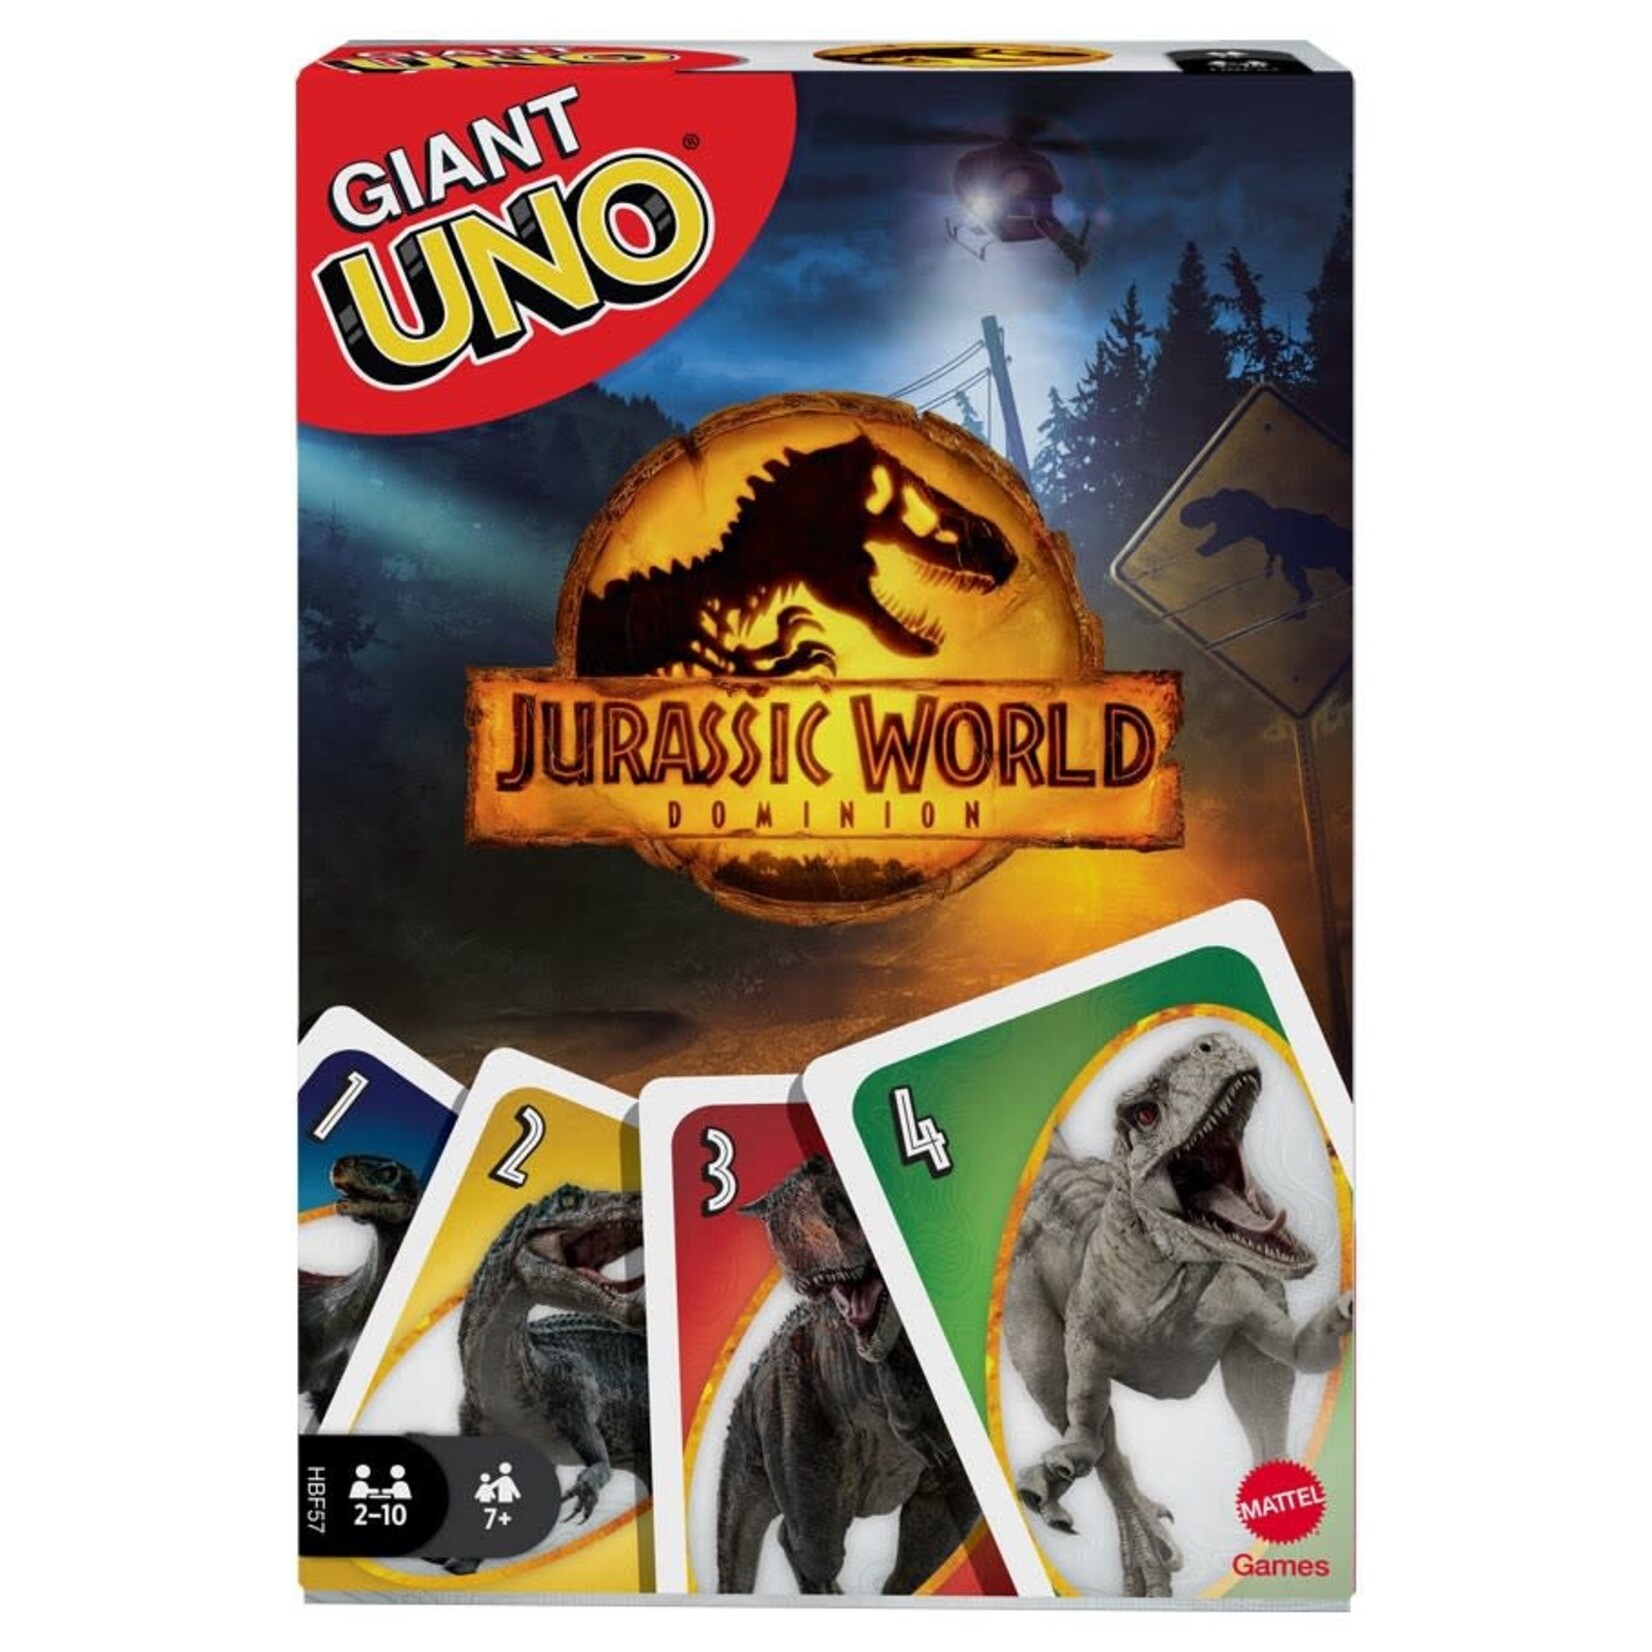 UNO: Giant Jurassic World Dominion